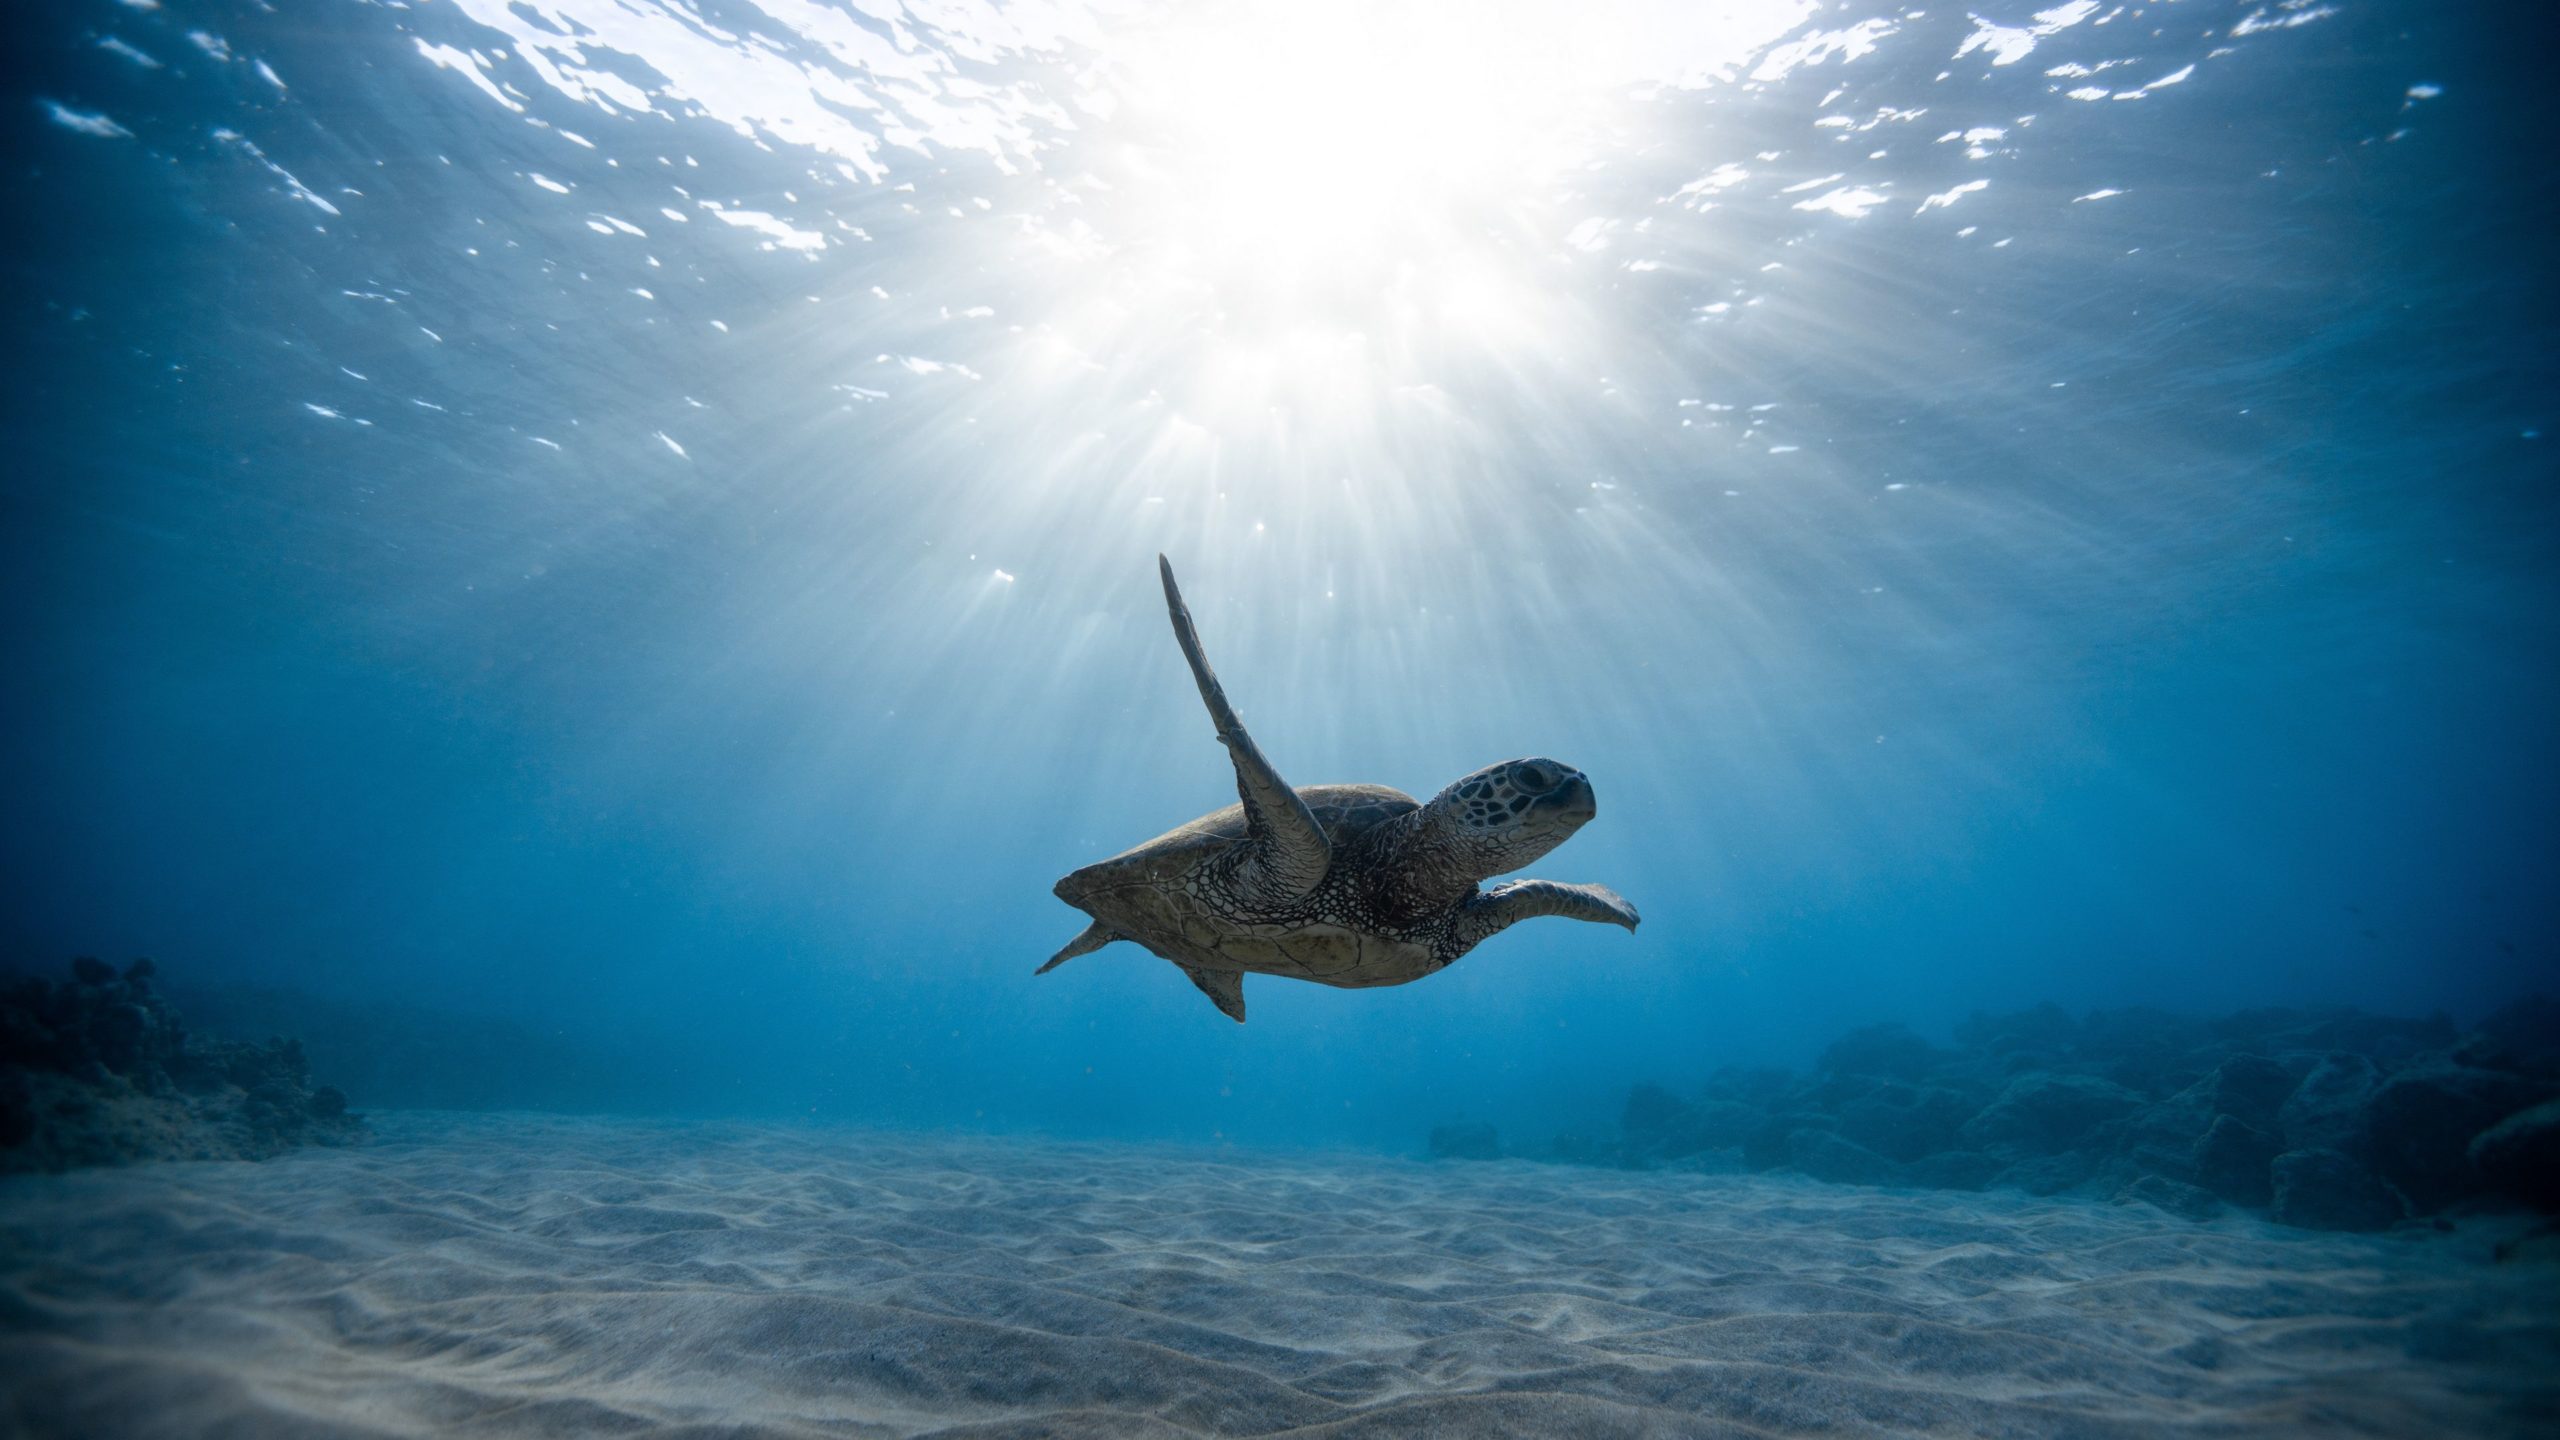 Hình ảnh 4k về chú rùa bơi dưới đại dương